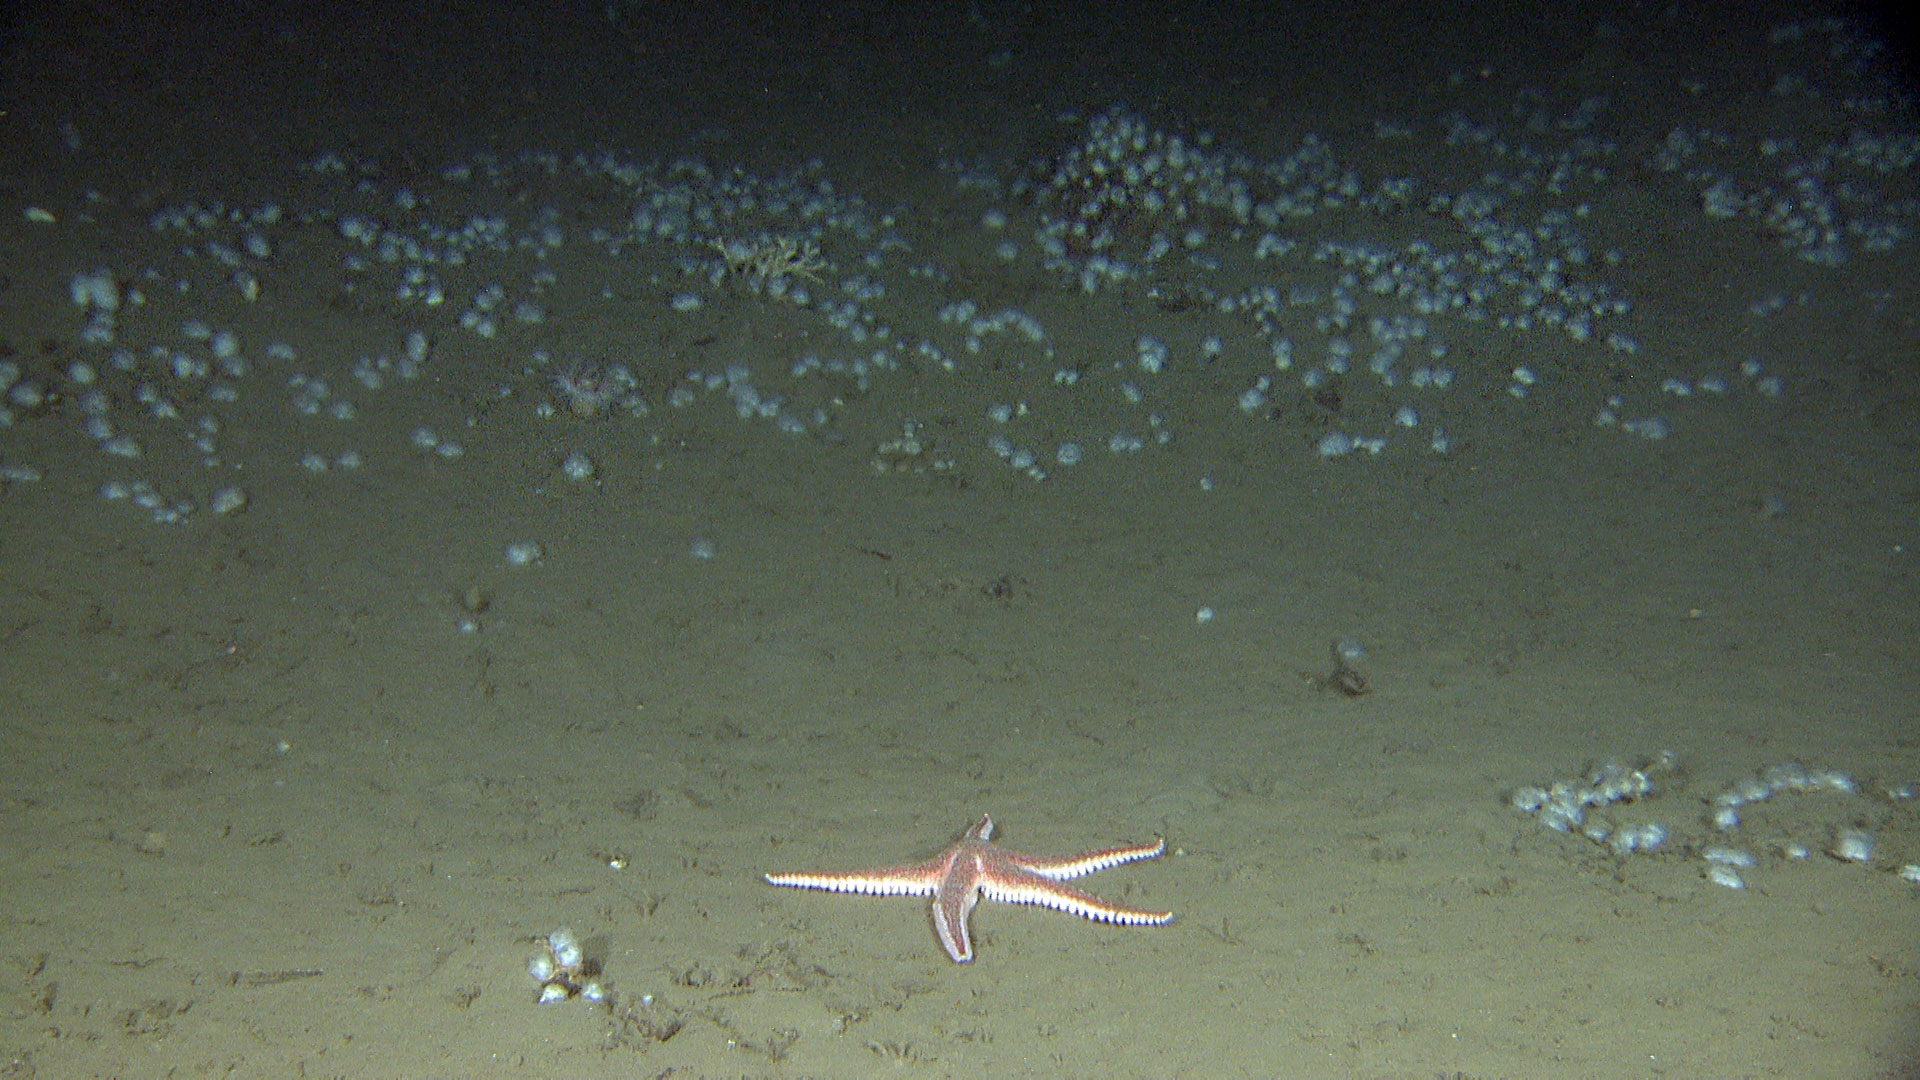 Bilde av sjøstjerne på havbunnen. Bak den vokser mange sekkedyr spredt utover bunnen.